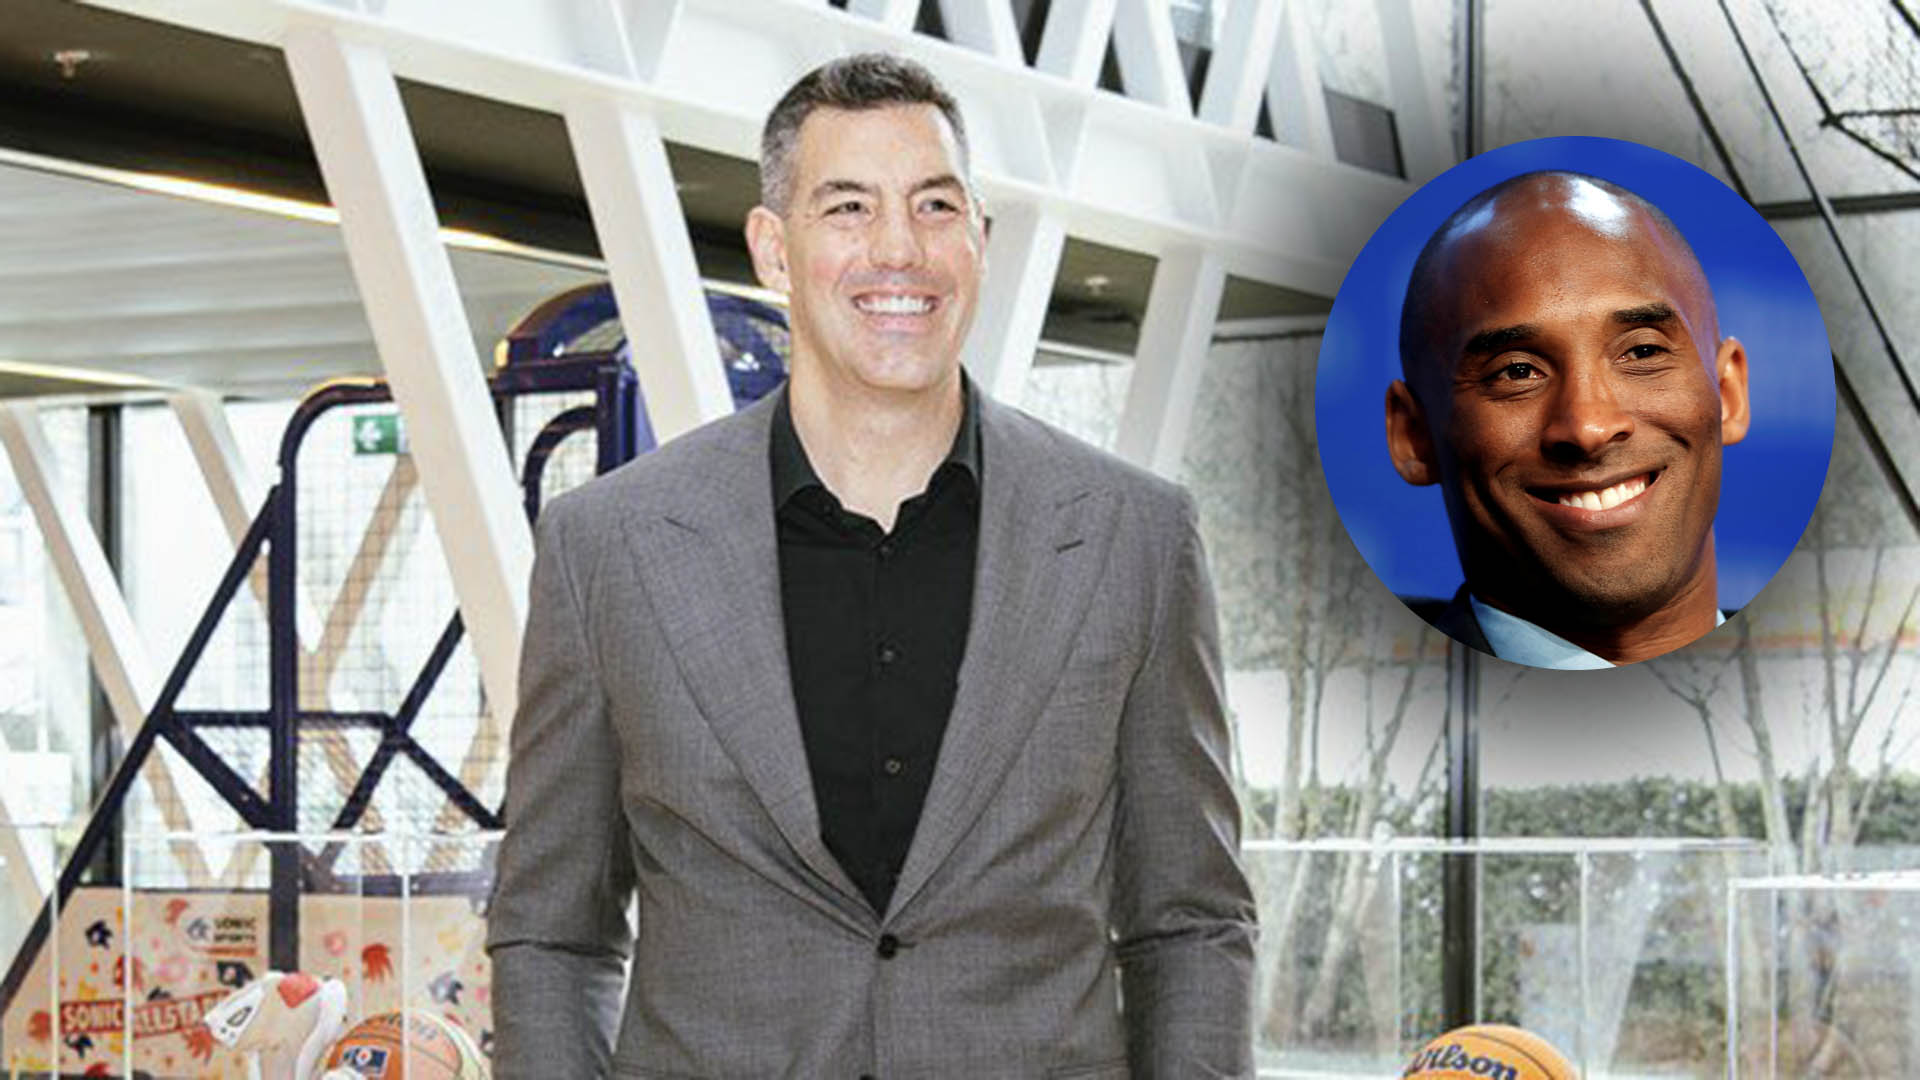 El nuevo rol que ocupará Luis Scola en el básquet mundial: el recuerdo de Kobe Bryant y las otras estrellas que lo acompañarán